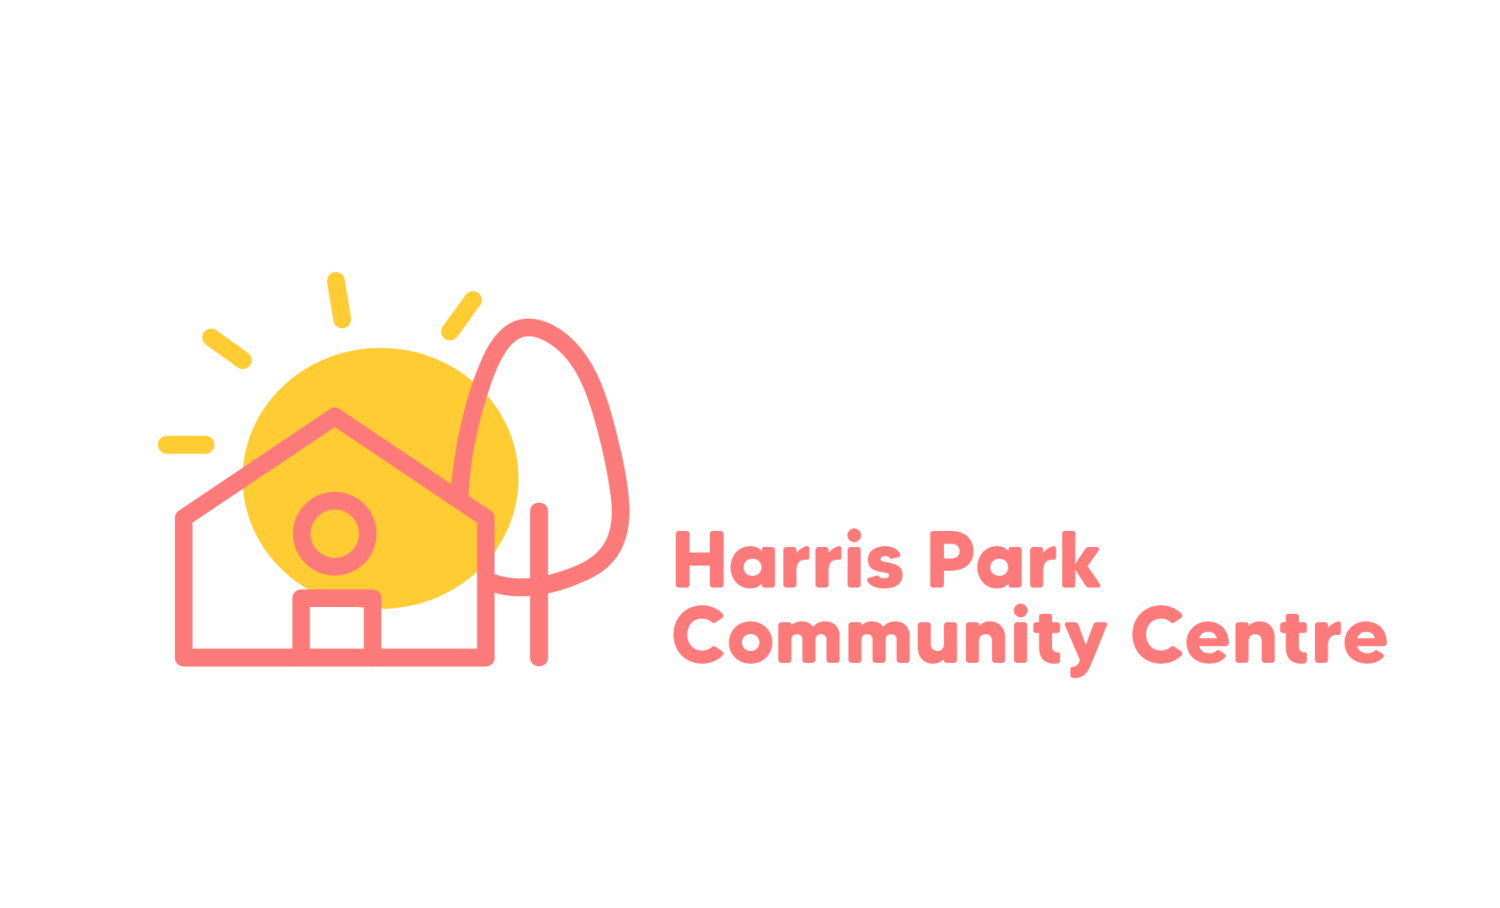 Harris Park Community Centre